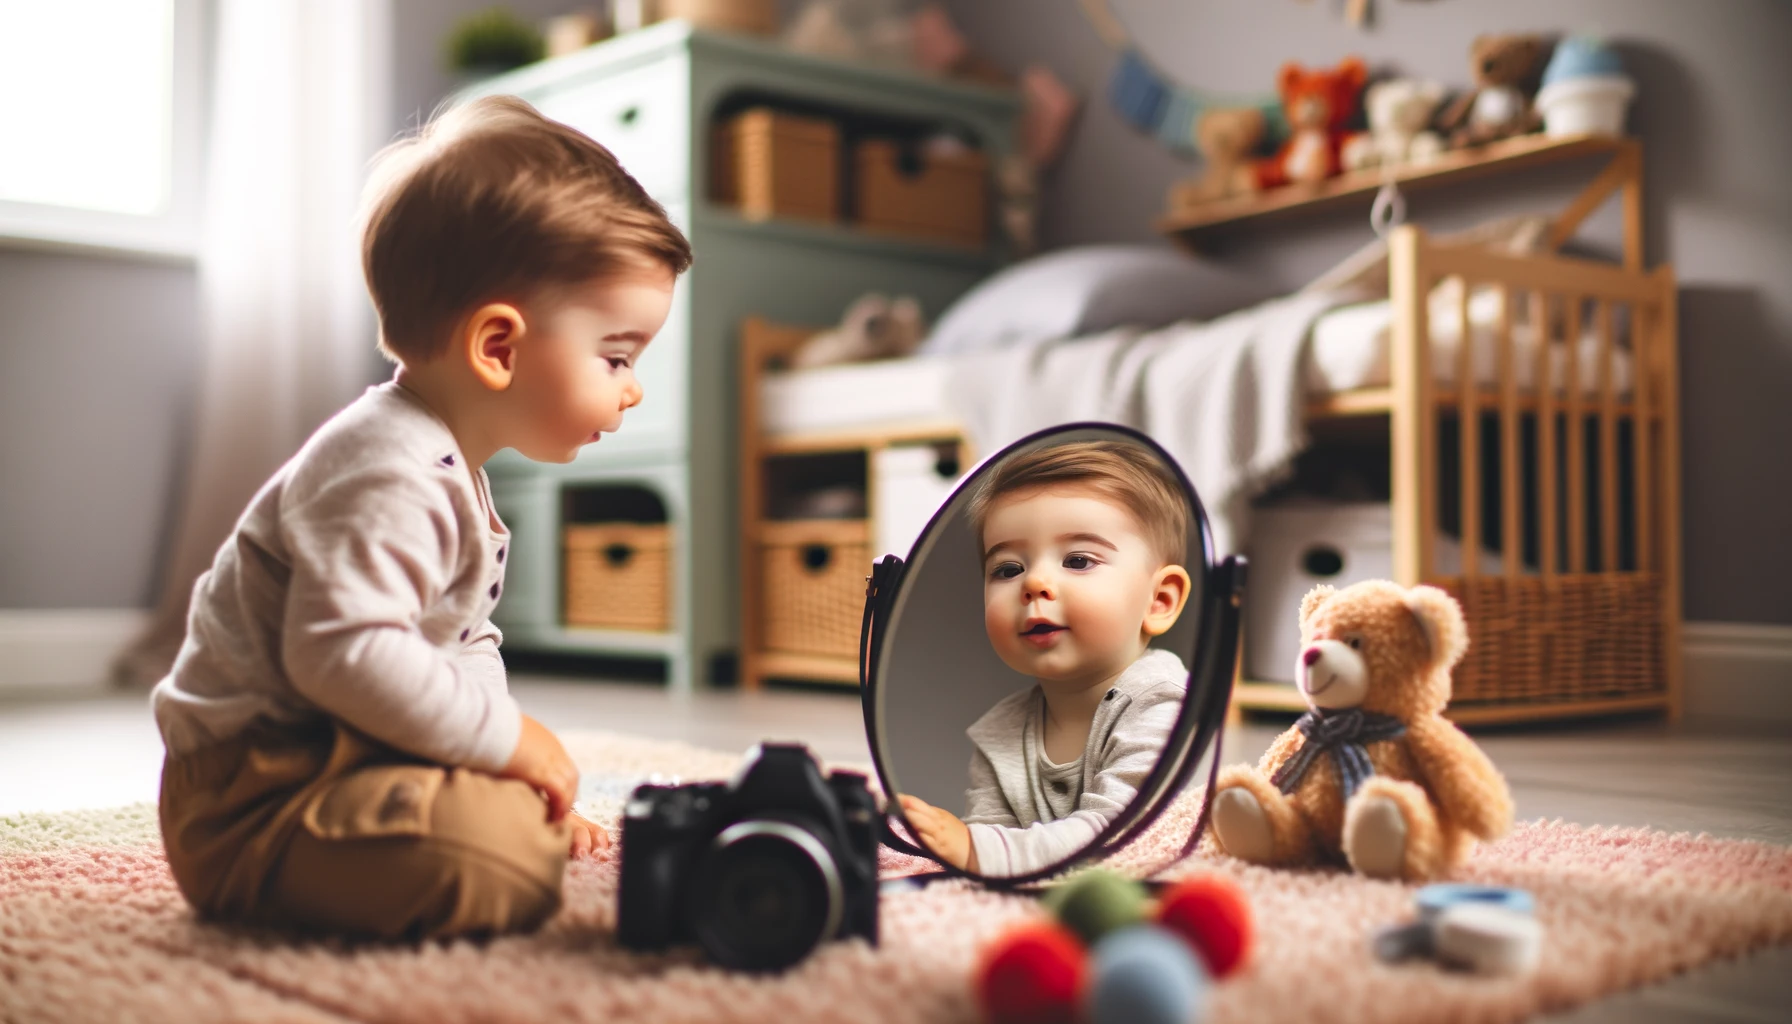 Ein junges Kind entdeckt zum ersten Mal sein Spiegelbild, das Gesicht erfüllt von Staunen und Neugier, ein gemütliches, gut beleuchtetes Kinderzimmer voller bunter Spielzeuge, 